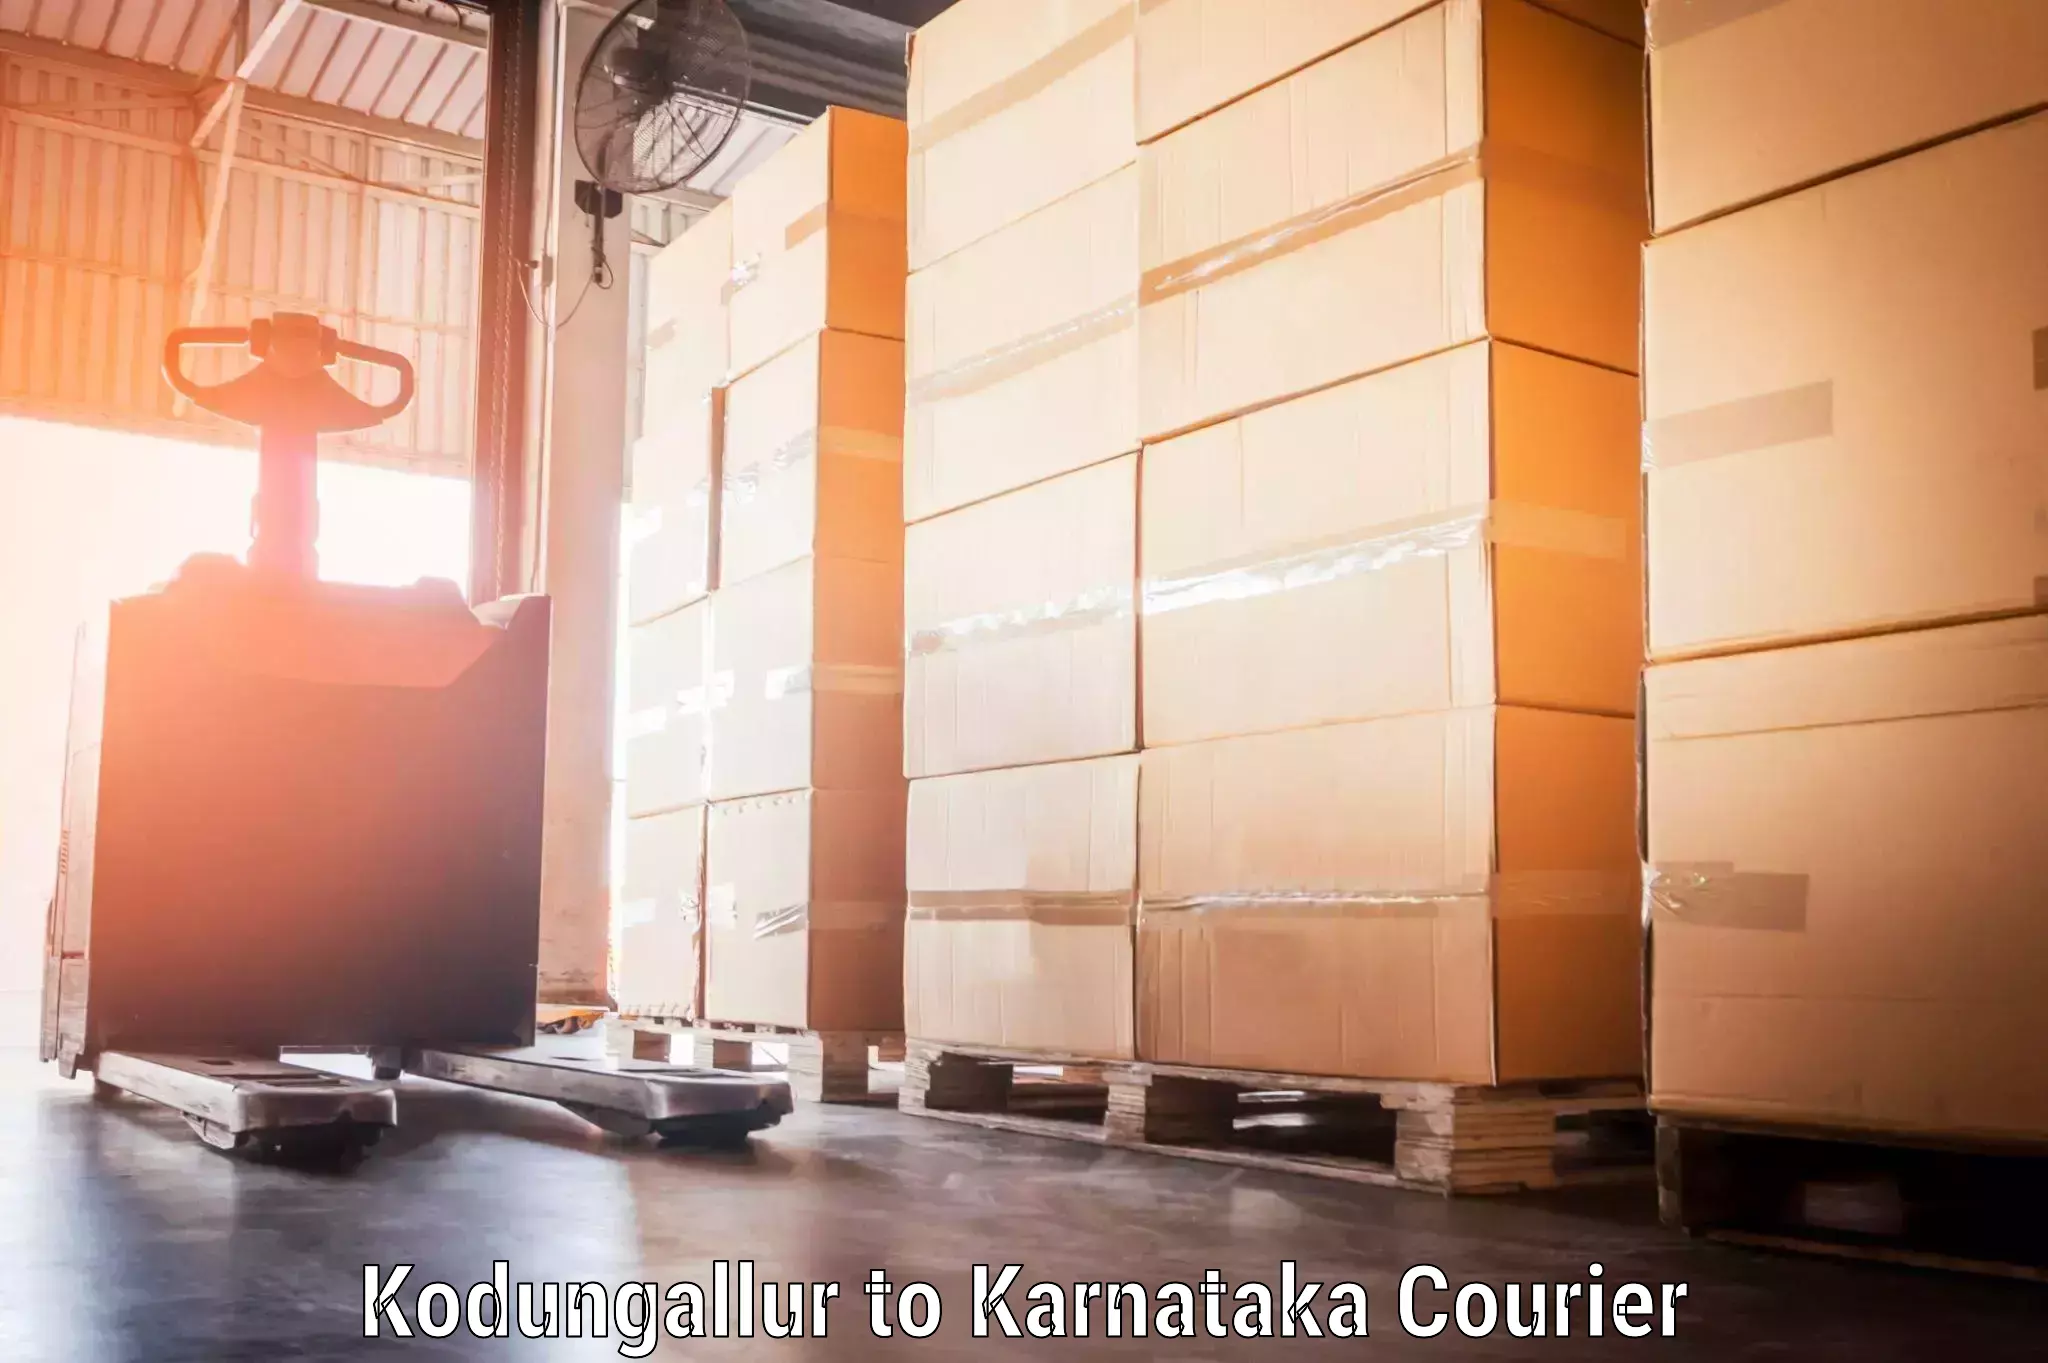 Luggage transport company Kodungallur to Yenepoya Mangalore